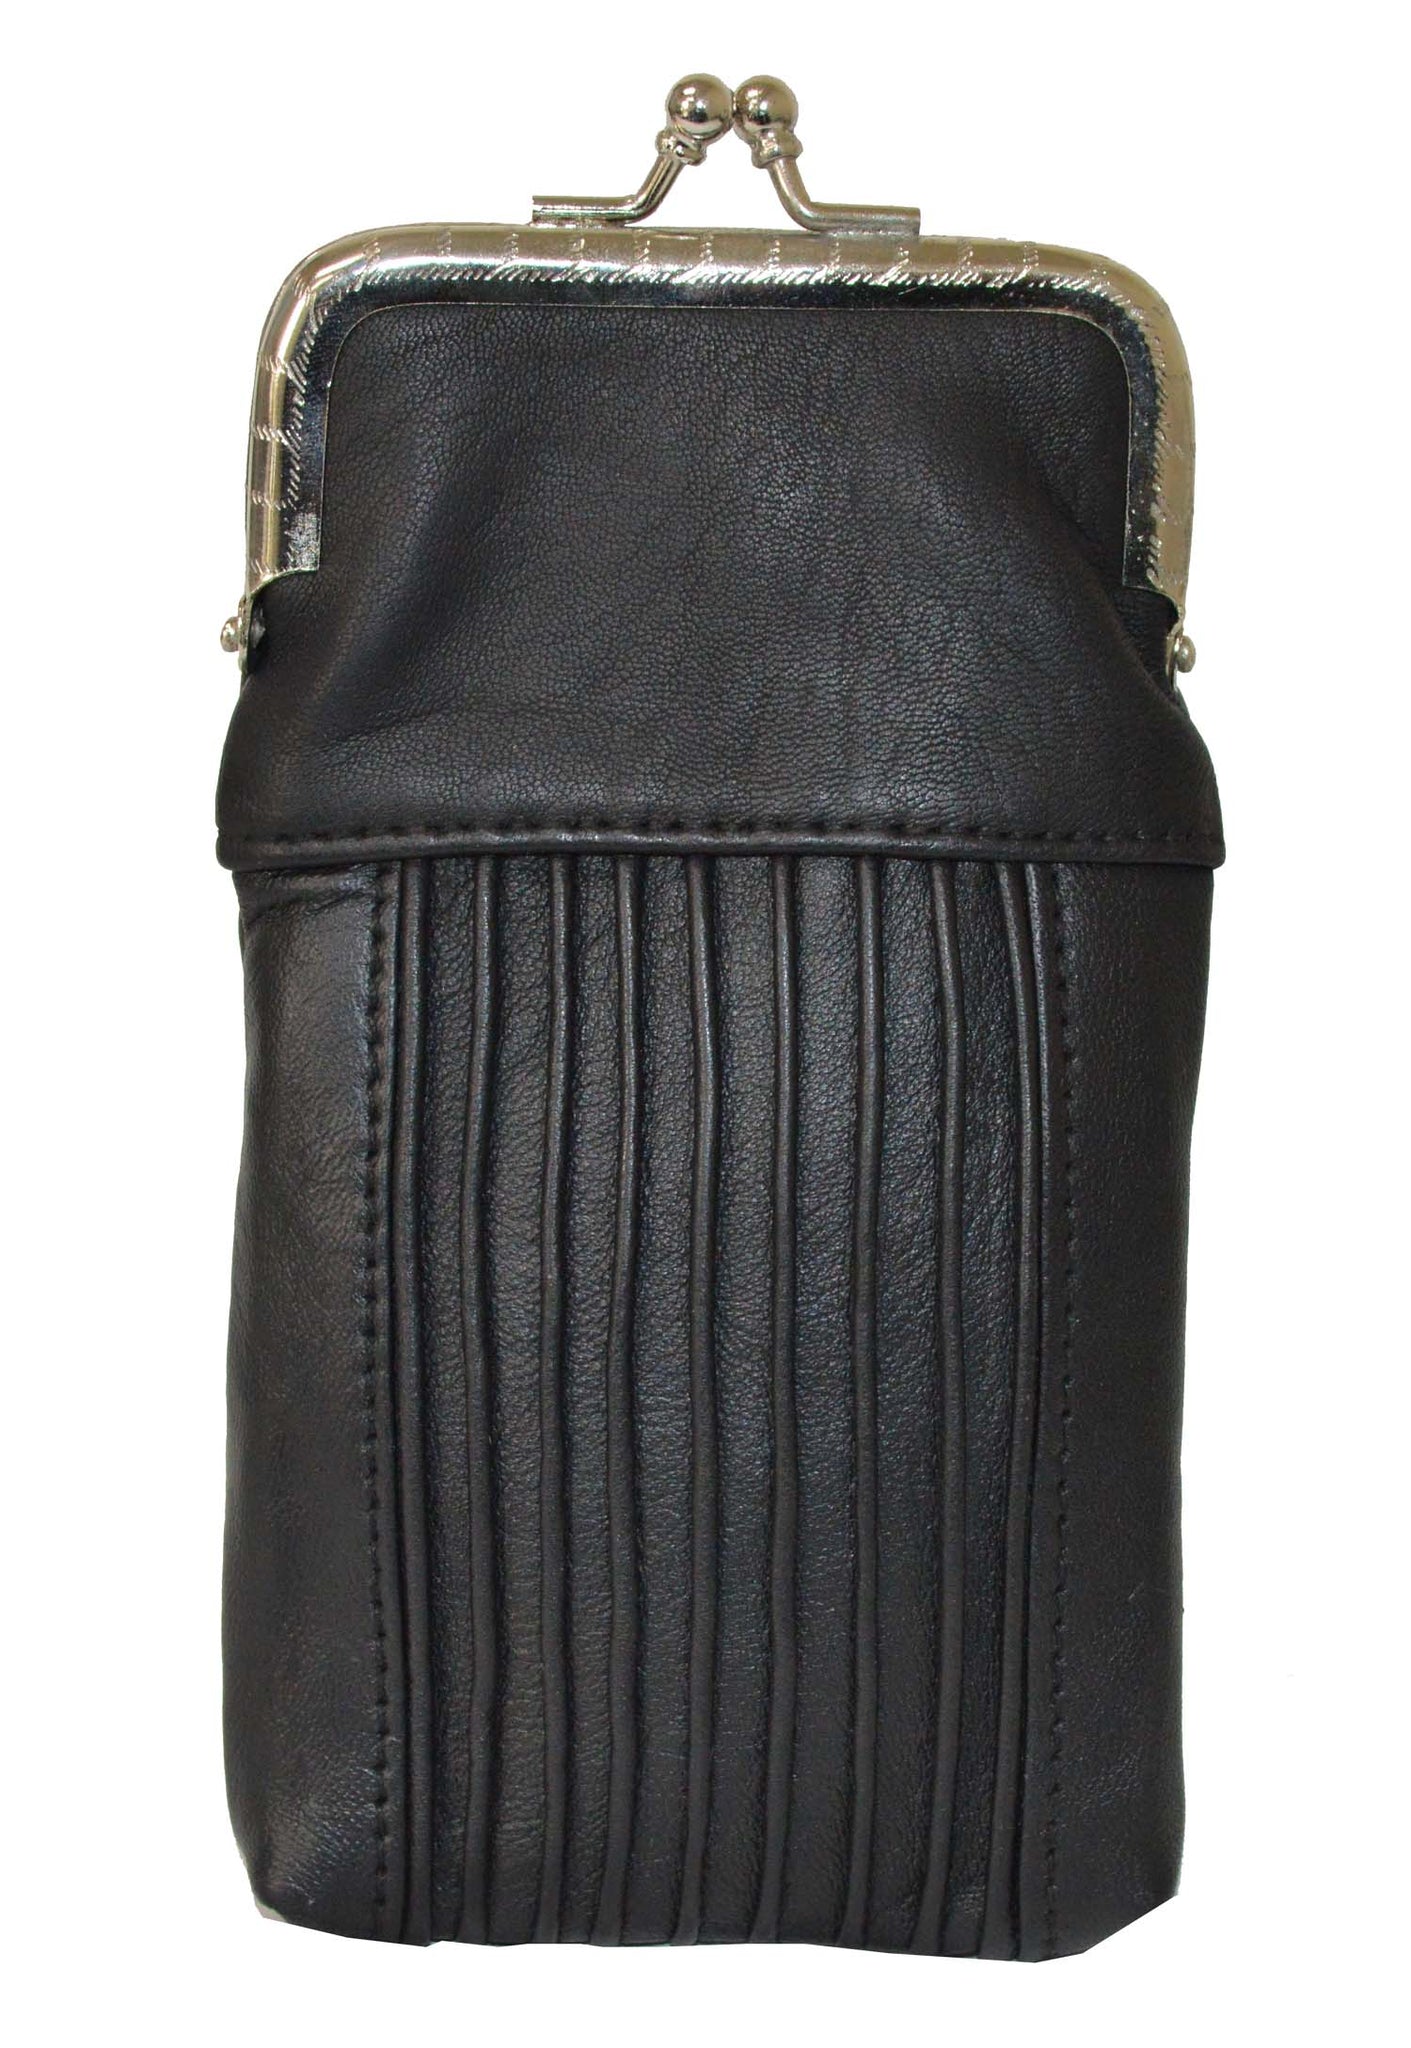 Designer Cigarette Case Pack Holder or 100's Lighter Pocket by  Leatherboss,Black